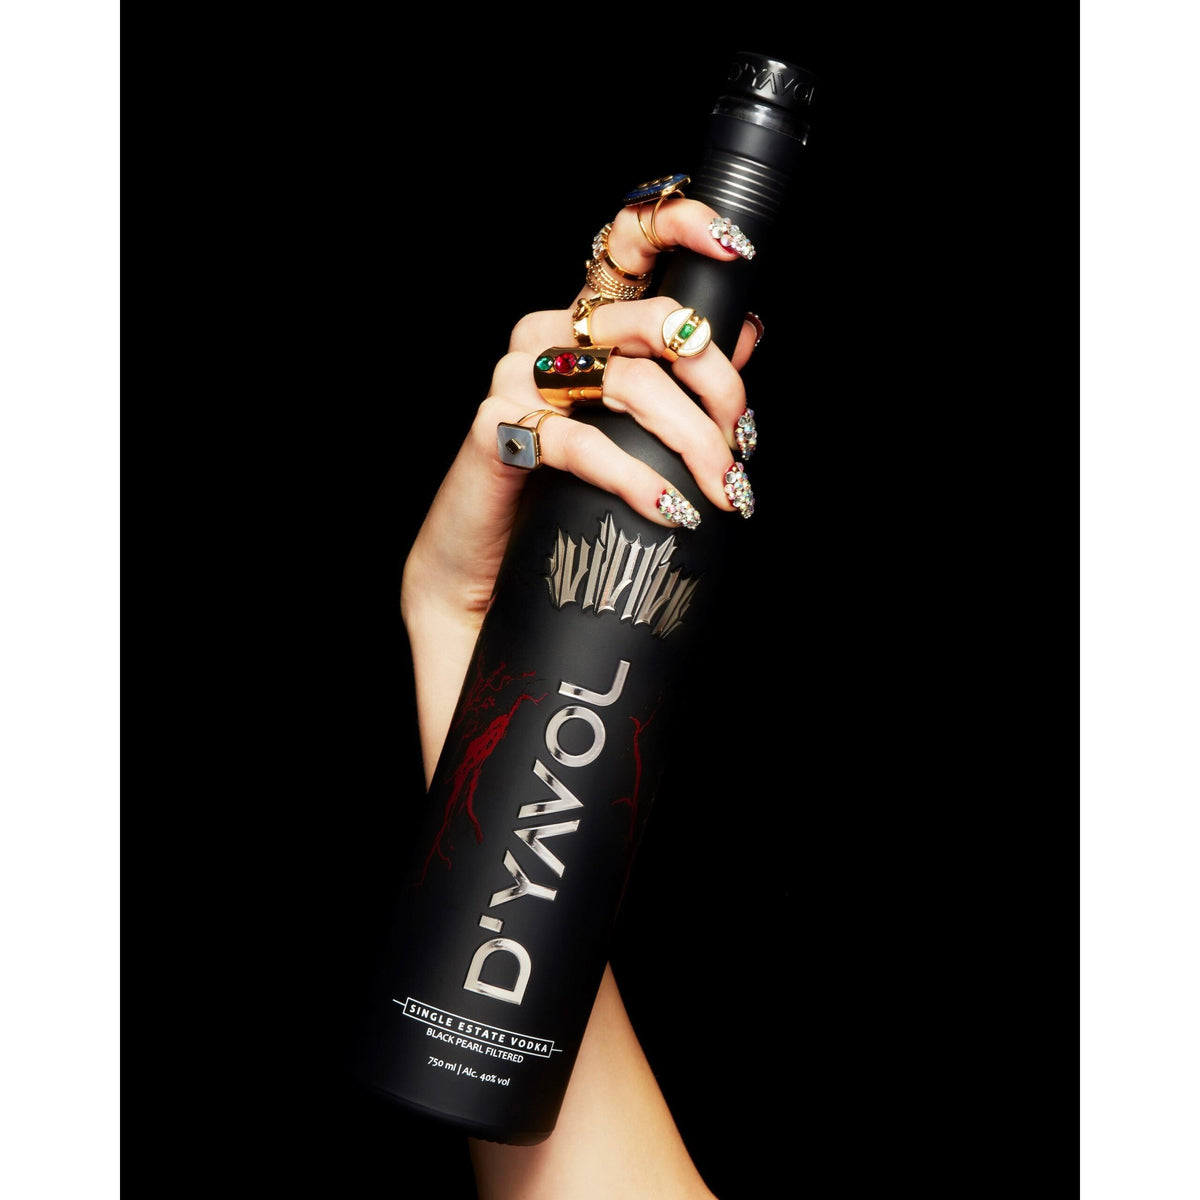 D'YAVOL (Shah Rukh Khan) Premium Single Estate Vodka 750ml